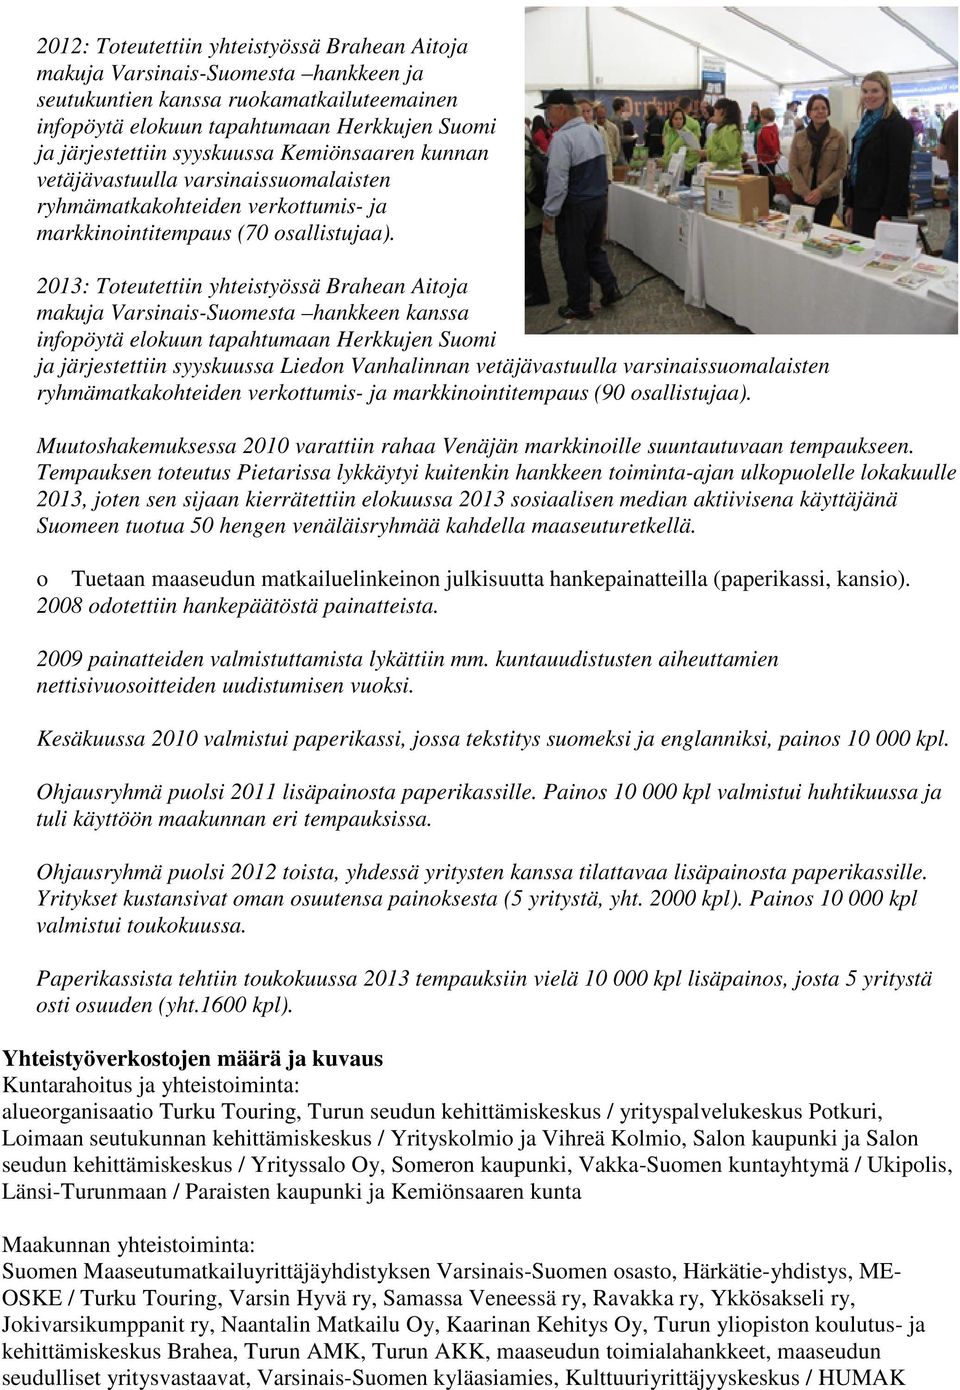 2013: Toteutettiin yhteistyössä Brahean Aitoja makuja Varsinais-Suomesta hankkeen kanssa infopöytä elokuun tapahtumaan Herkkujen Suomi ja järjestettiin syyskuussa Liedon Vanhalinnan vetäjävastuulla